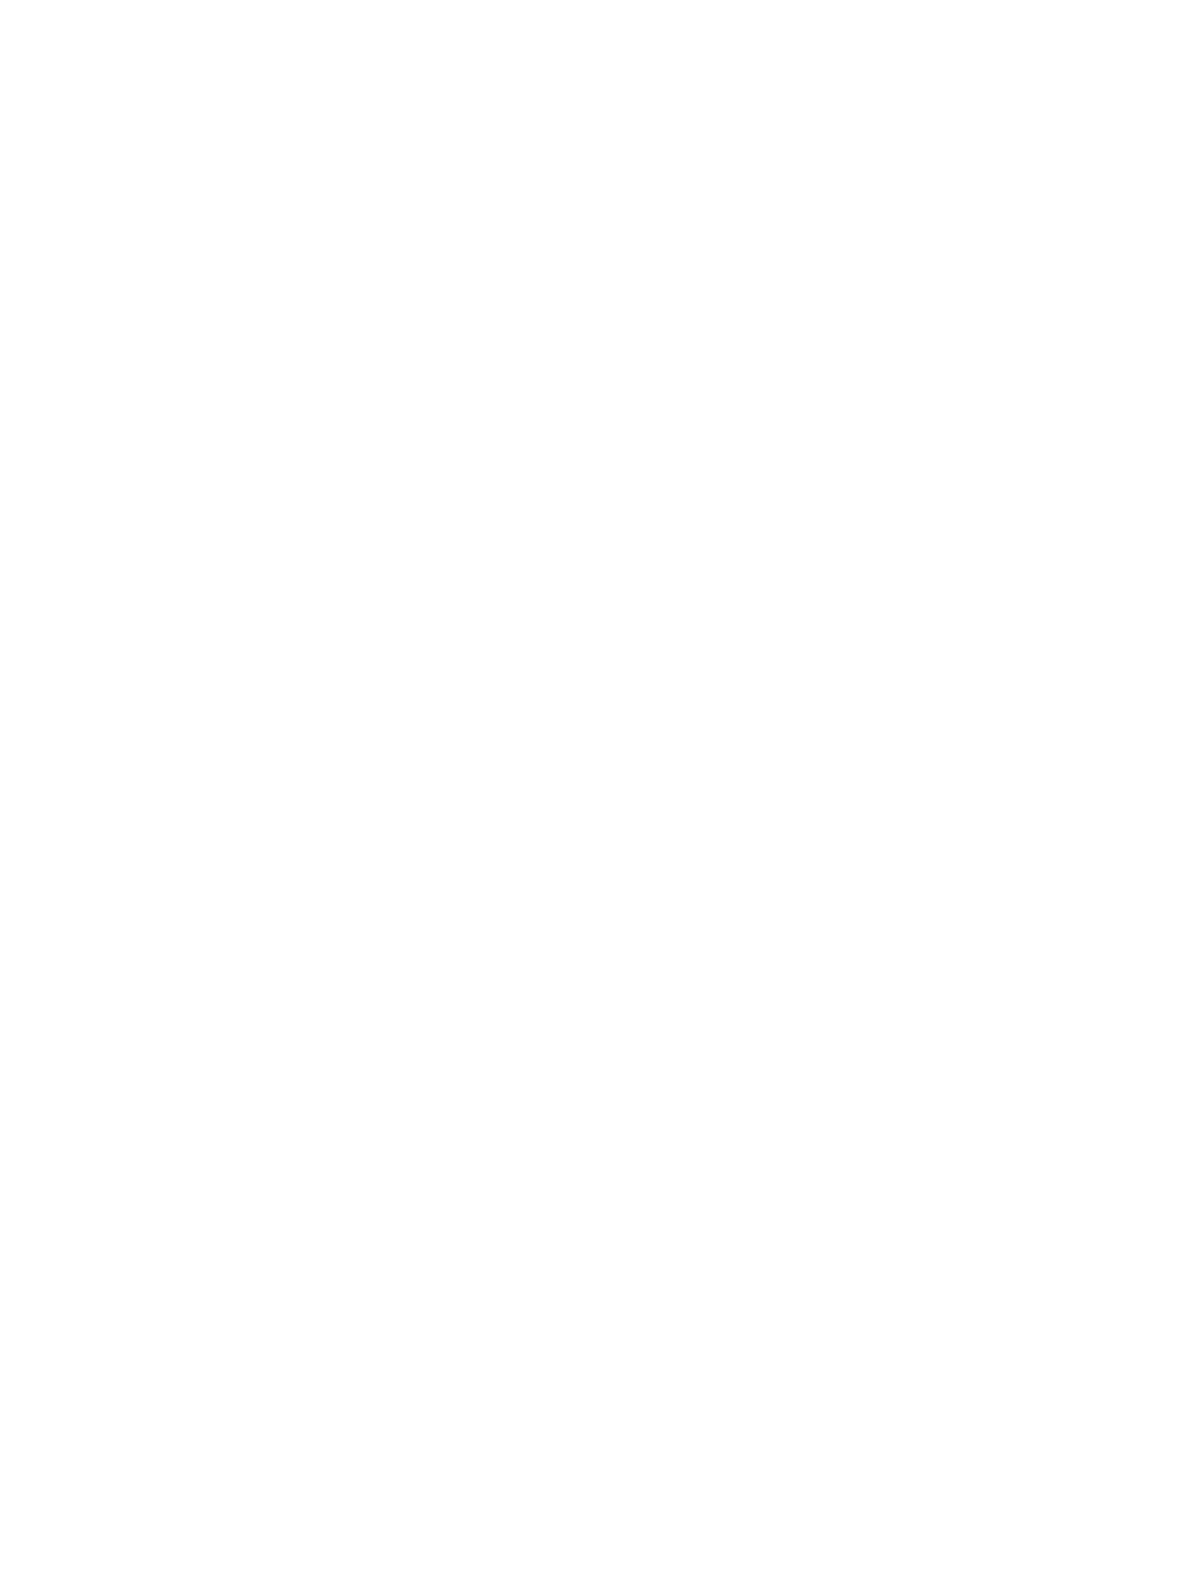 National Petroleum Services Company logo pour fonds sombres (PNG transparent)